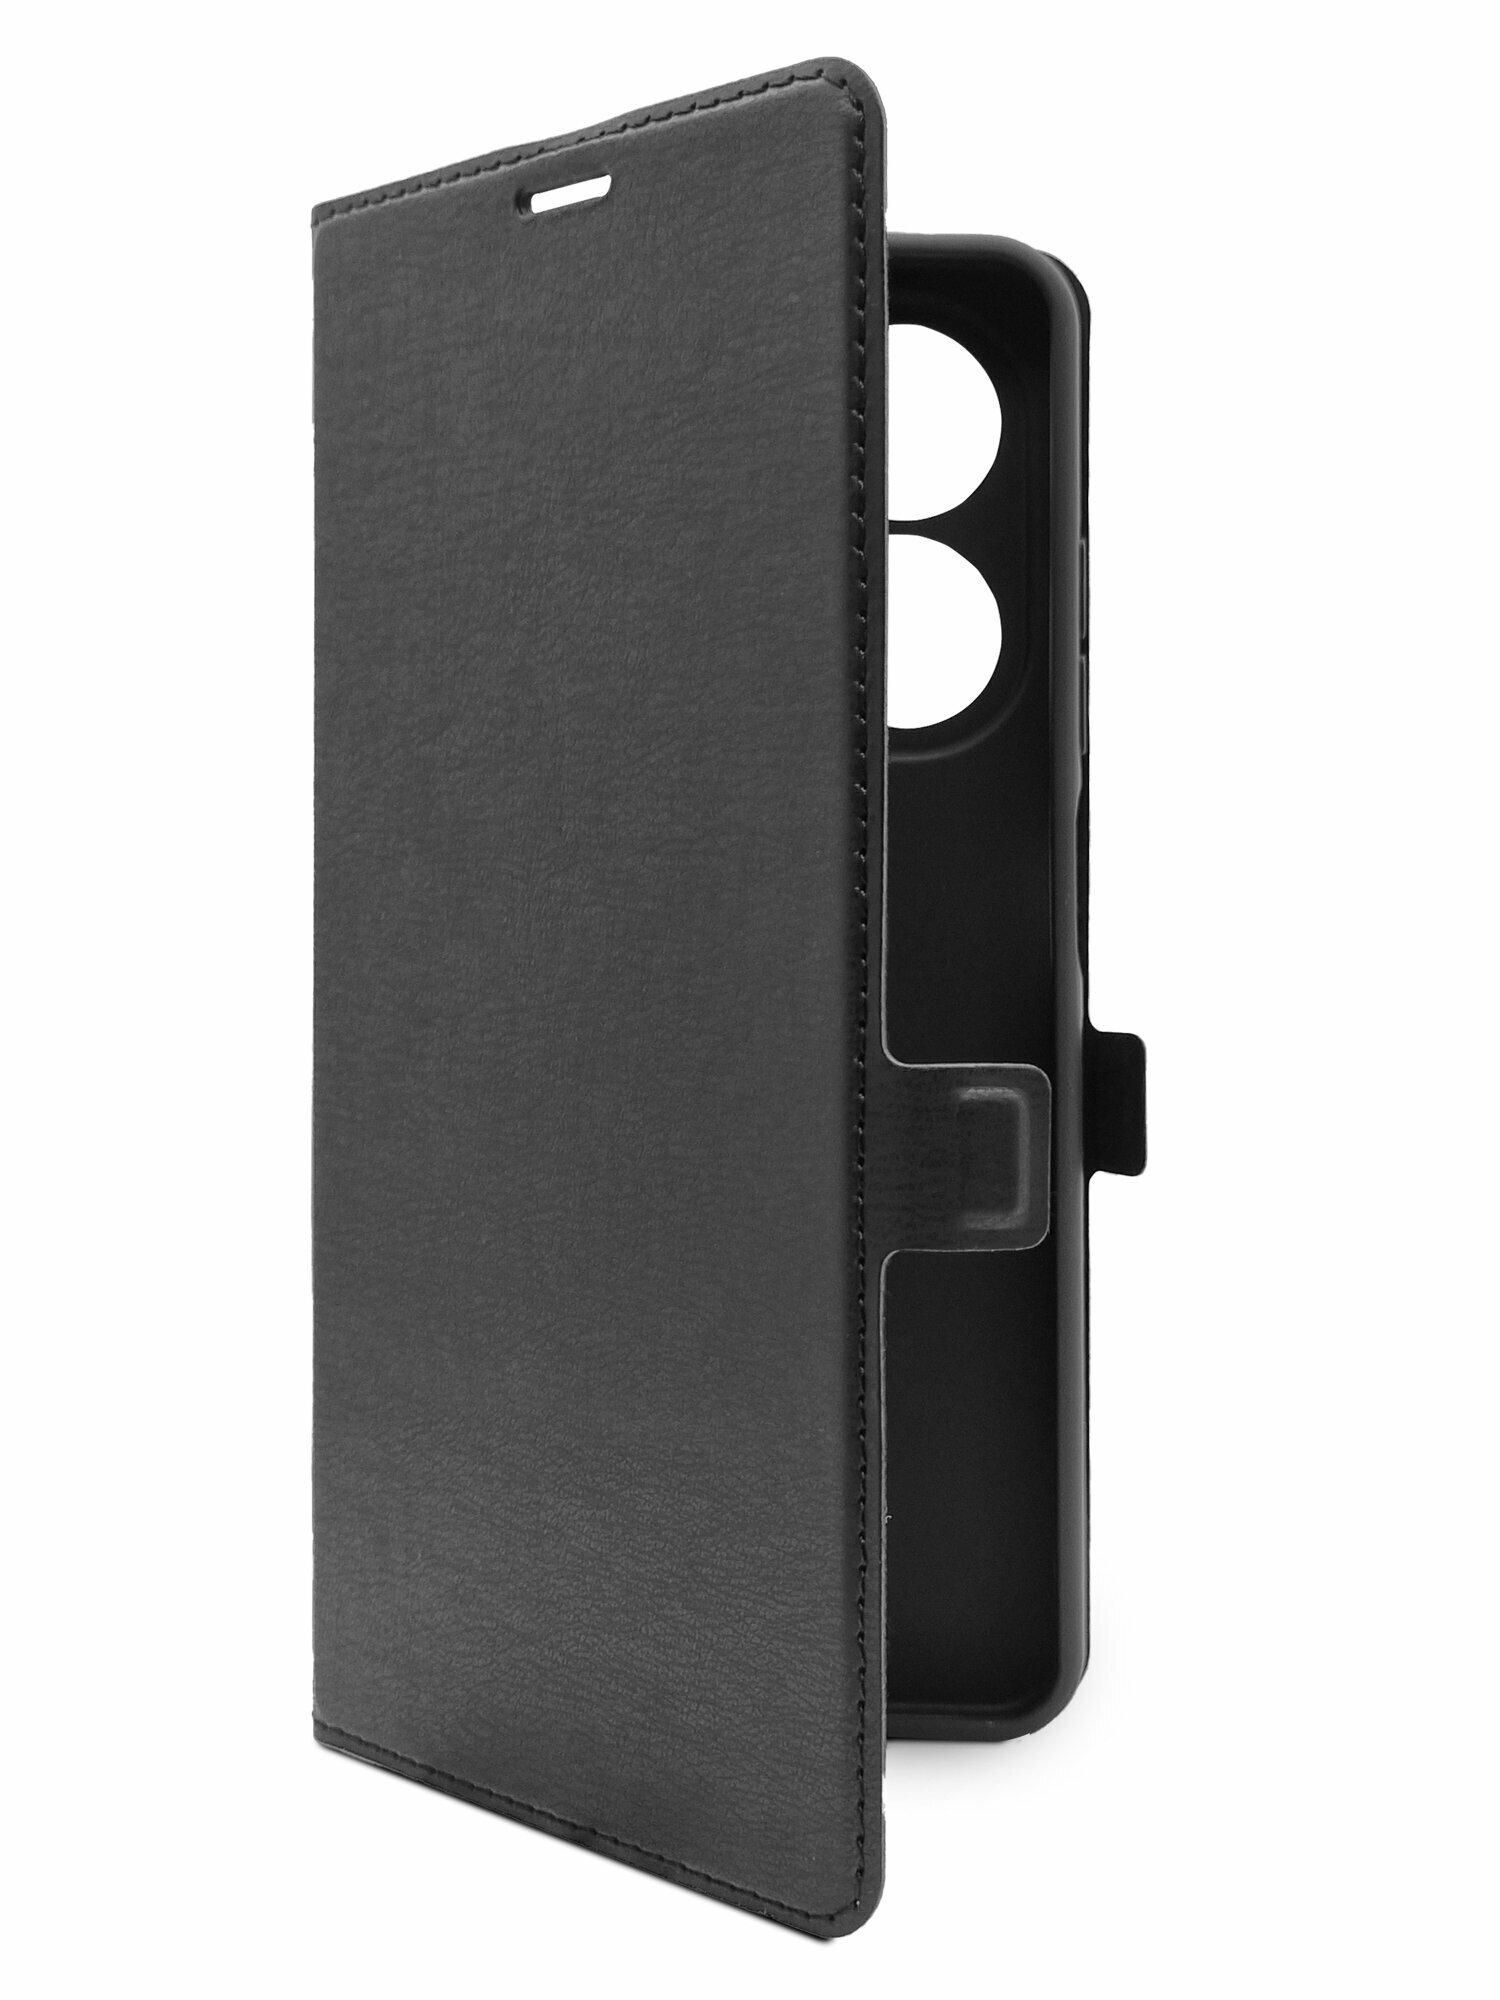 Чехол на Tecno Spark 20C (Техно Спарк 20С) черный книжка эко-кожа с функцией подставки отделением для пластиковых карт и магнитами Book case Miuko